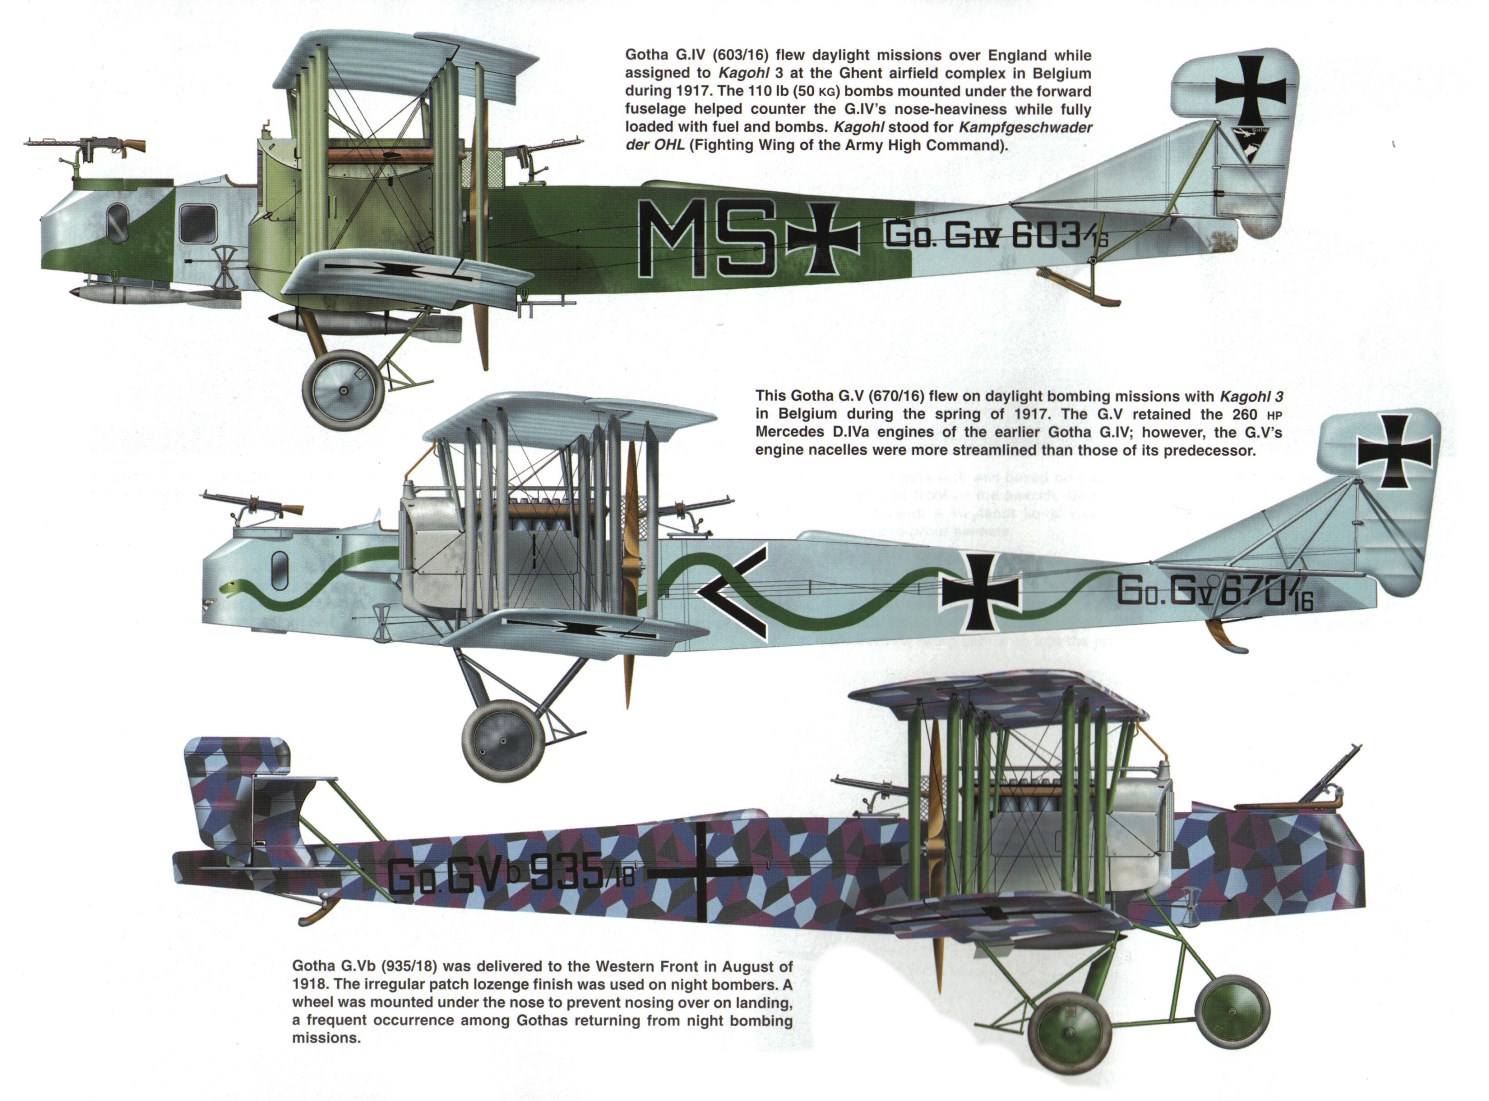 Gotha G IV And G V Biplane Bombers